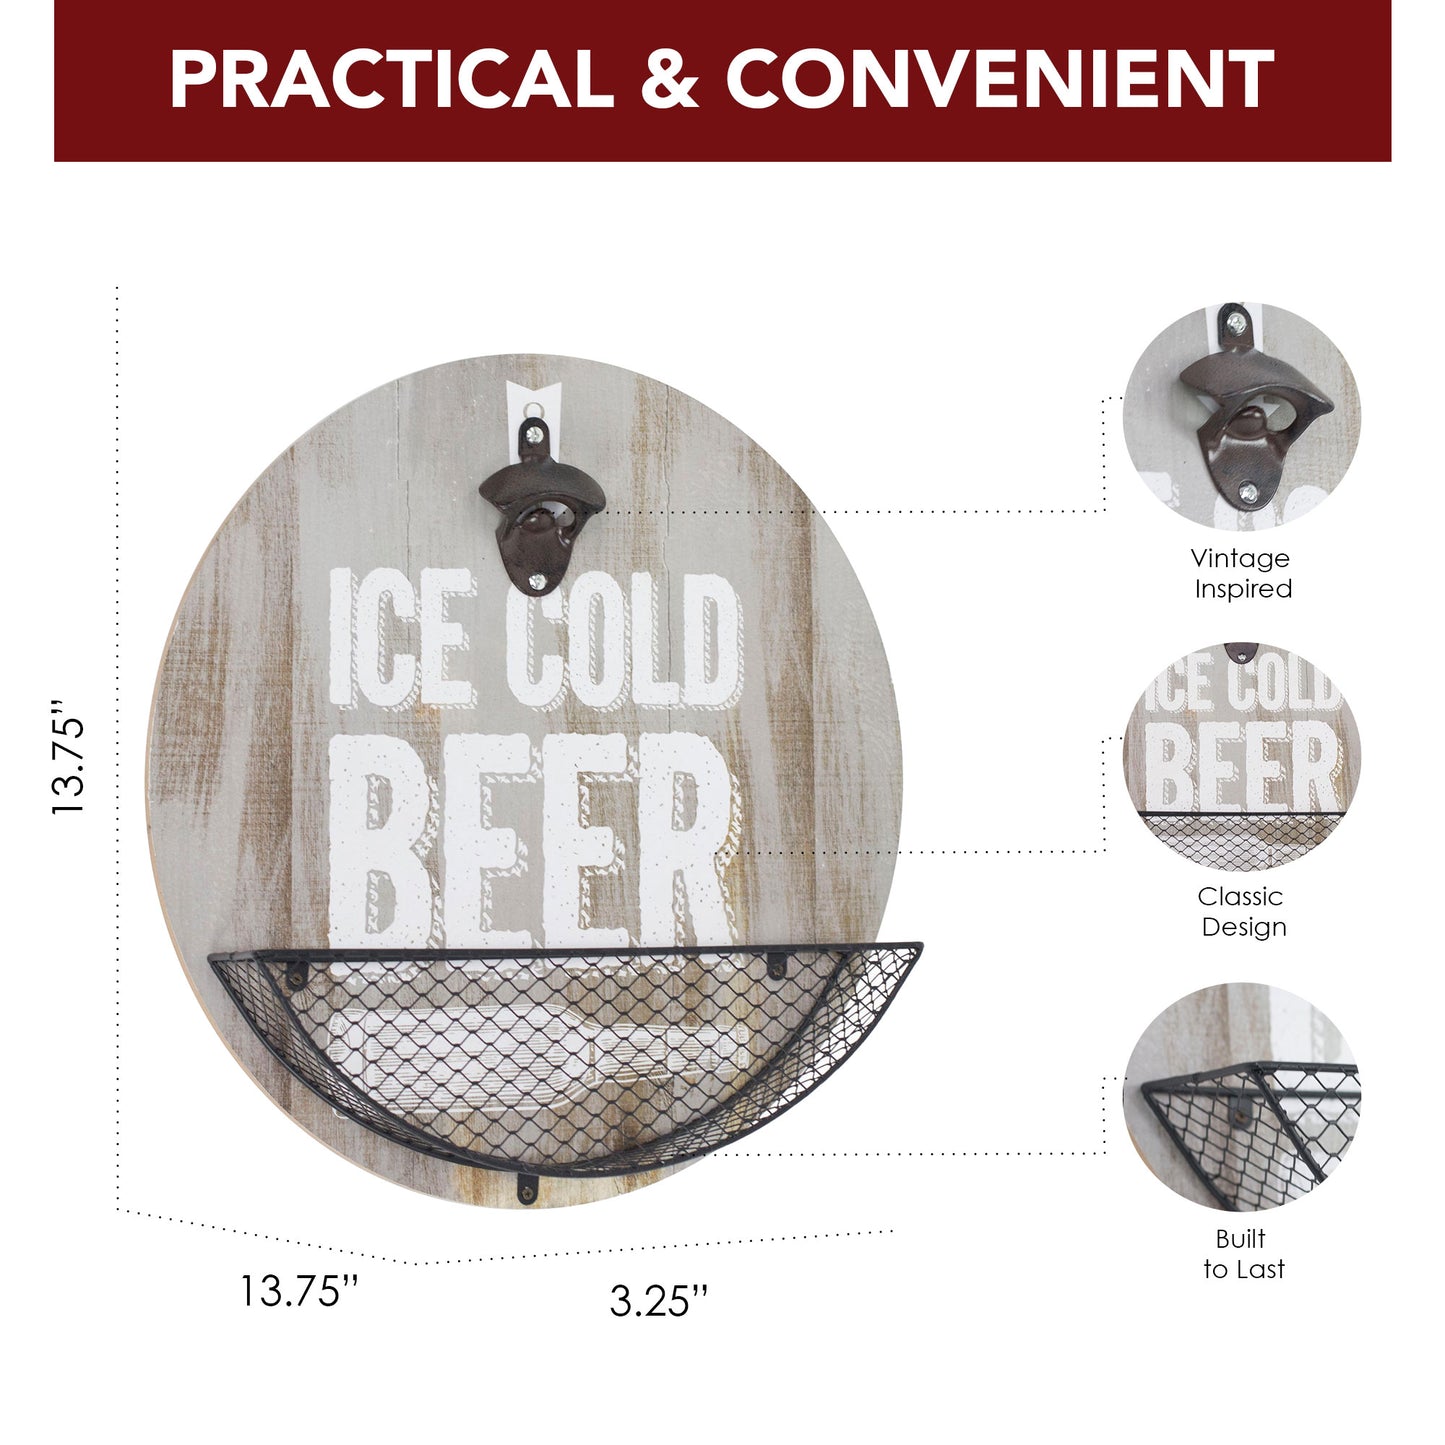 Wood-Textured 'Ice Cold Beer' Bottle Opener & Cap Catcher - 14"